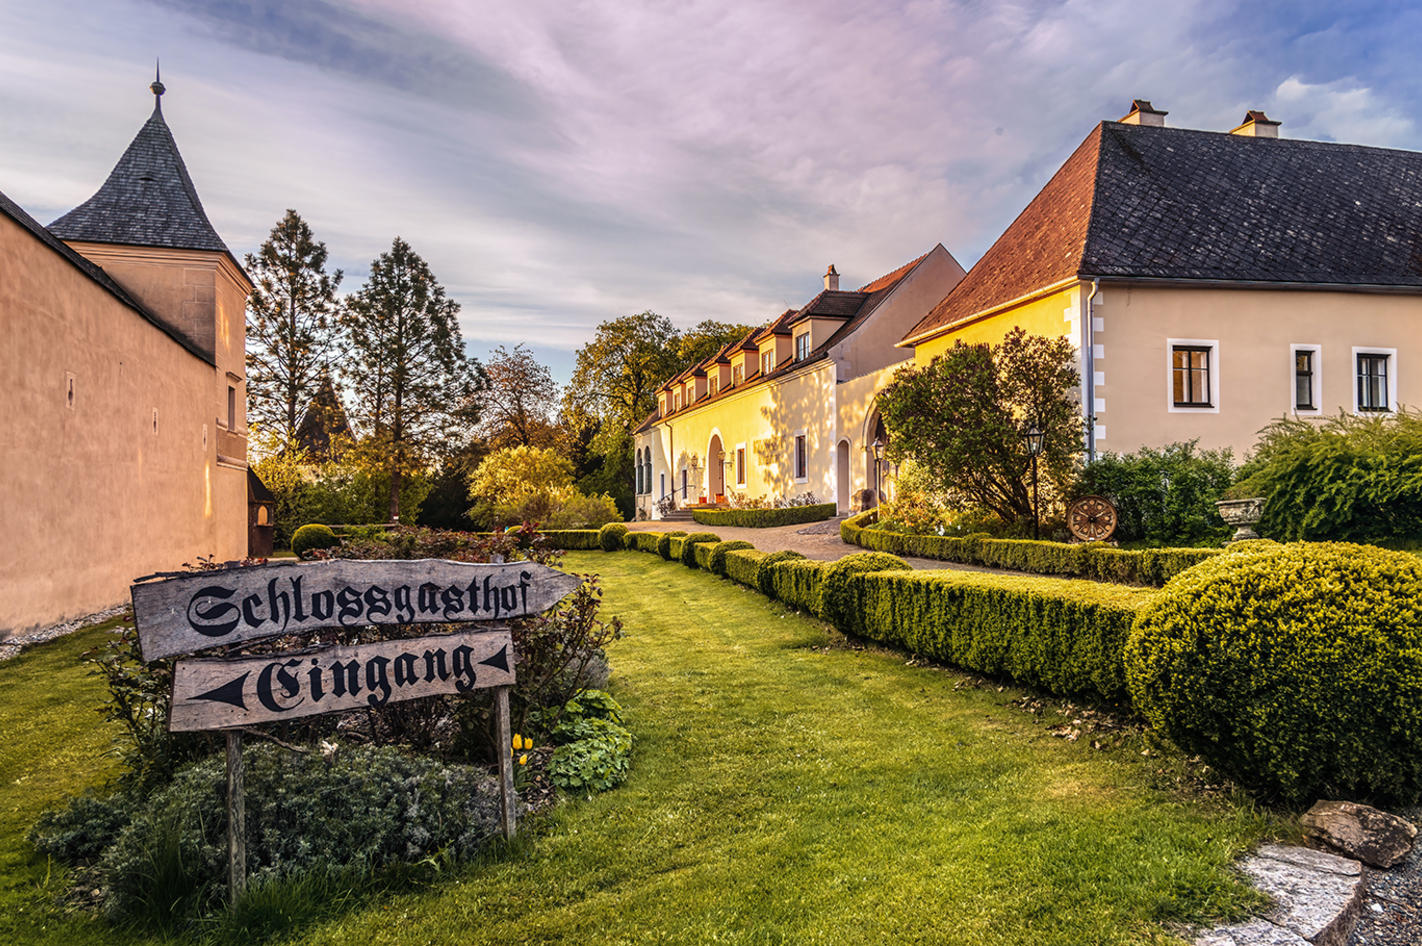 Übernachtung im Schlosshotel Rosenburg – Zurück ins Mittelalter zu Rittern und Burgen